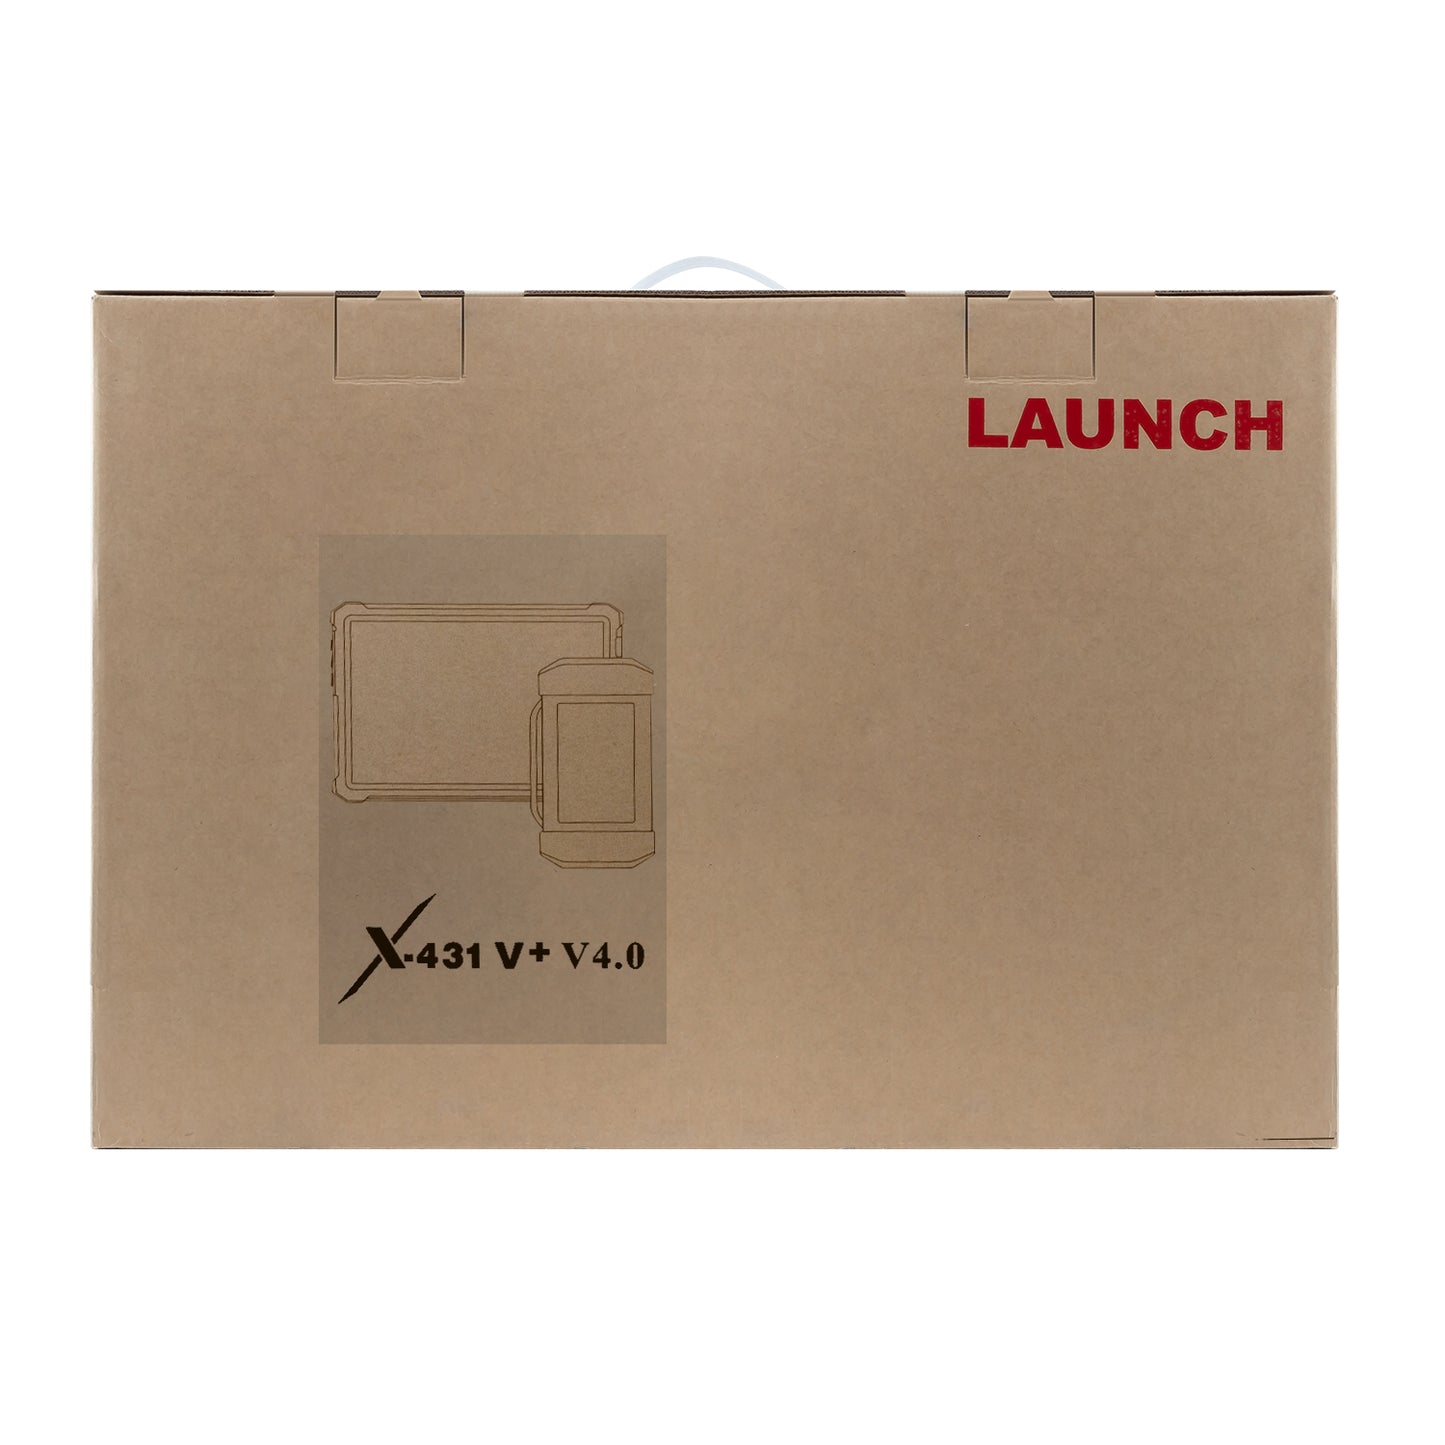 Launch X431 V+ 5.0 HD III Heavy Duty Diesel version